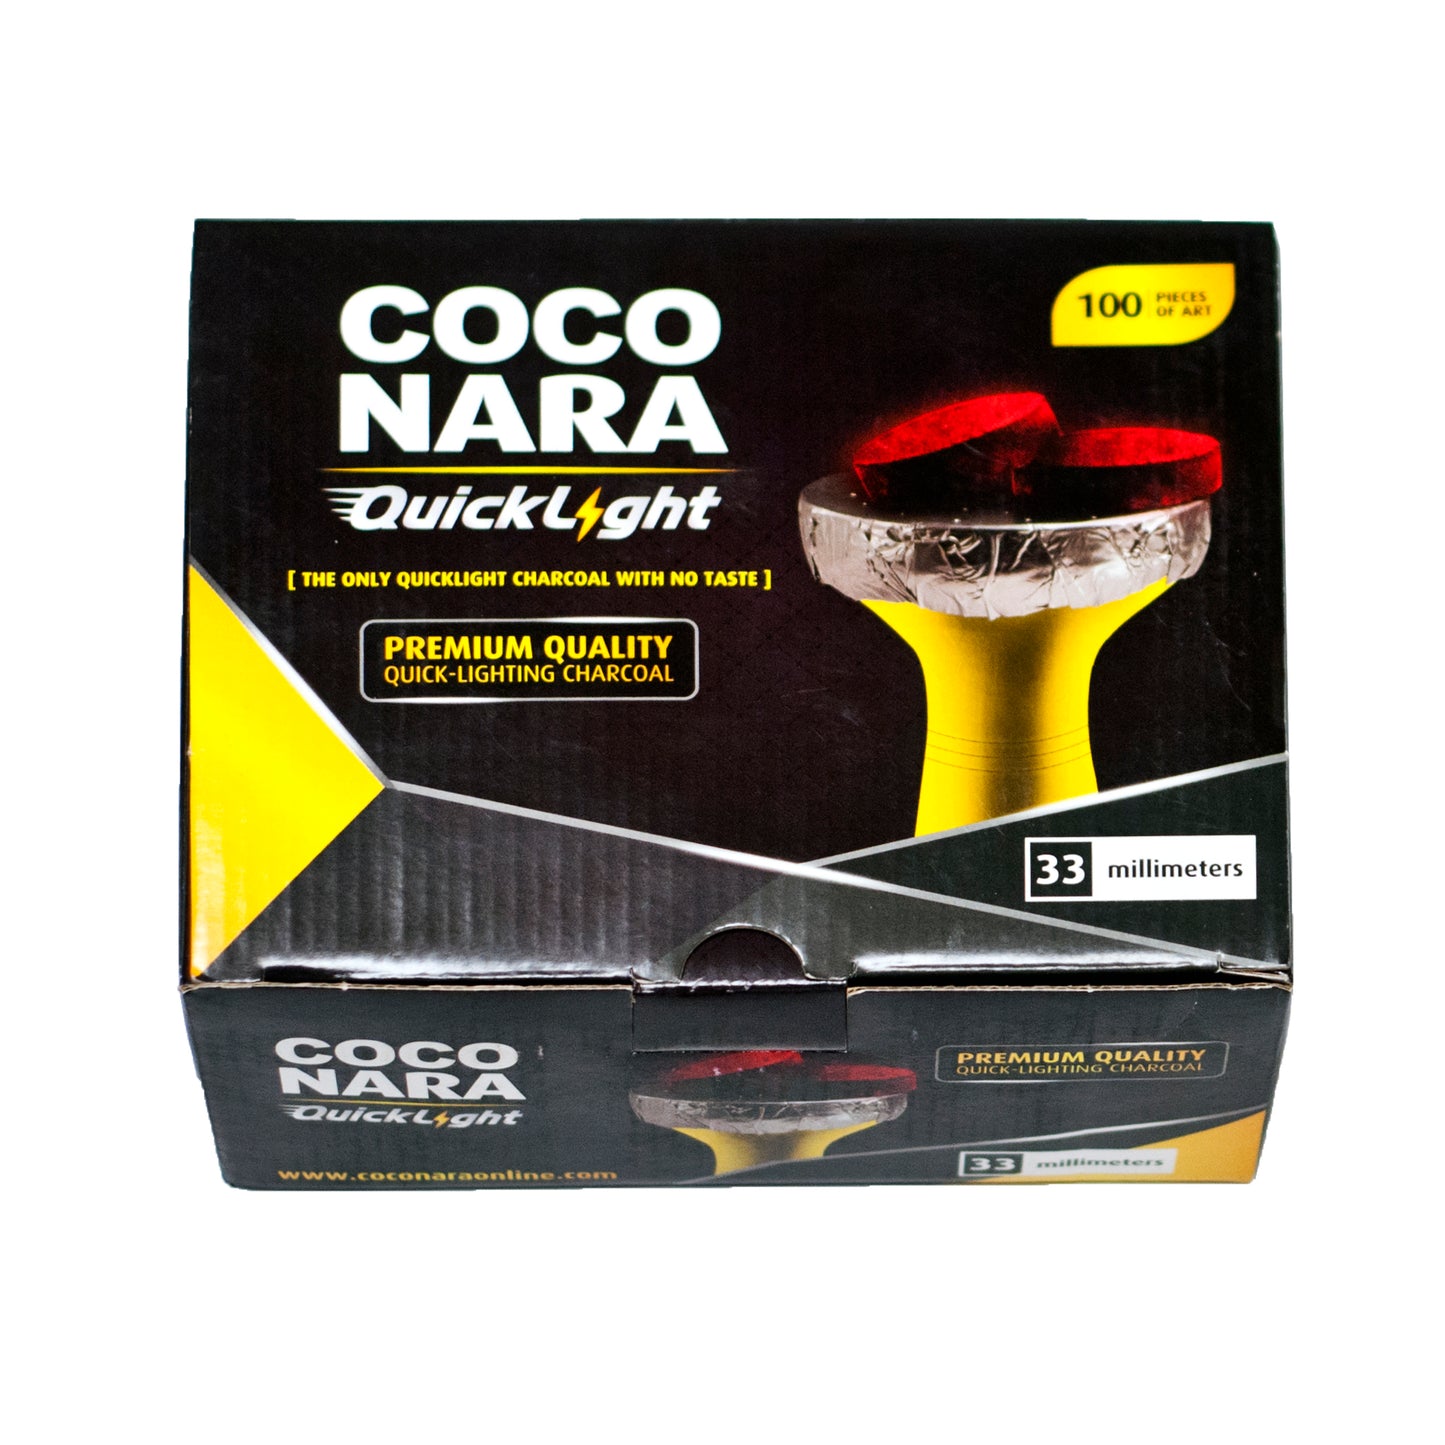 Coconara Quicklight hookah charcoal 33mm